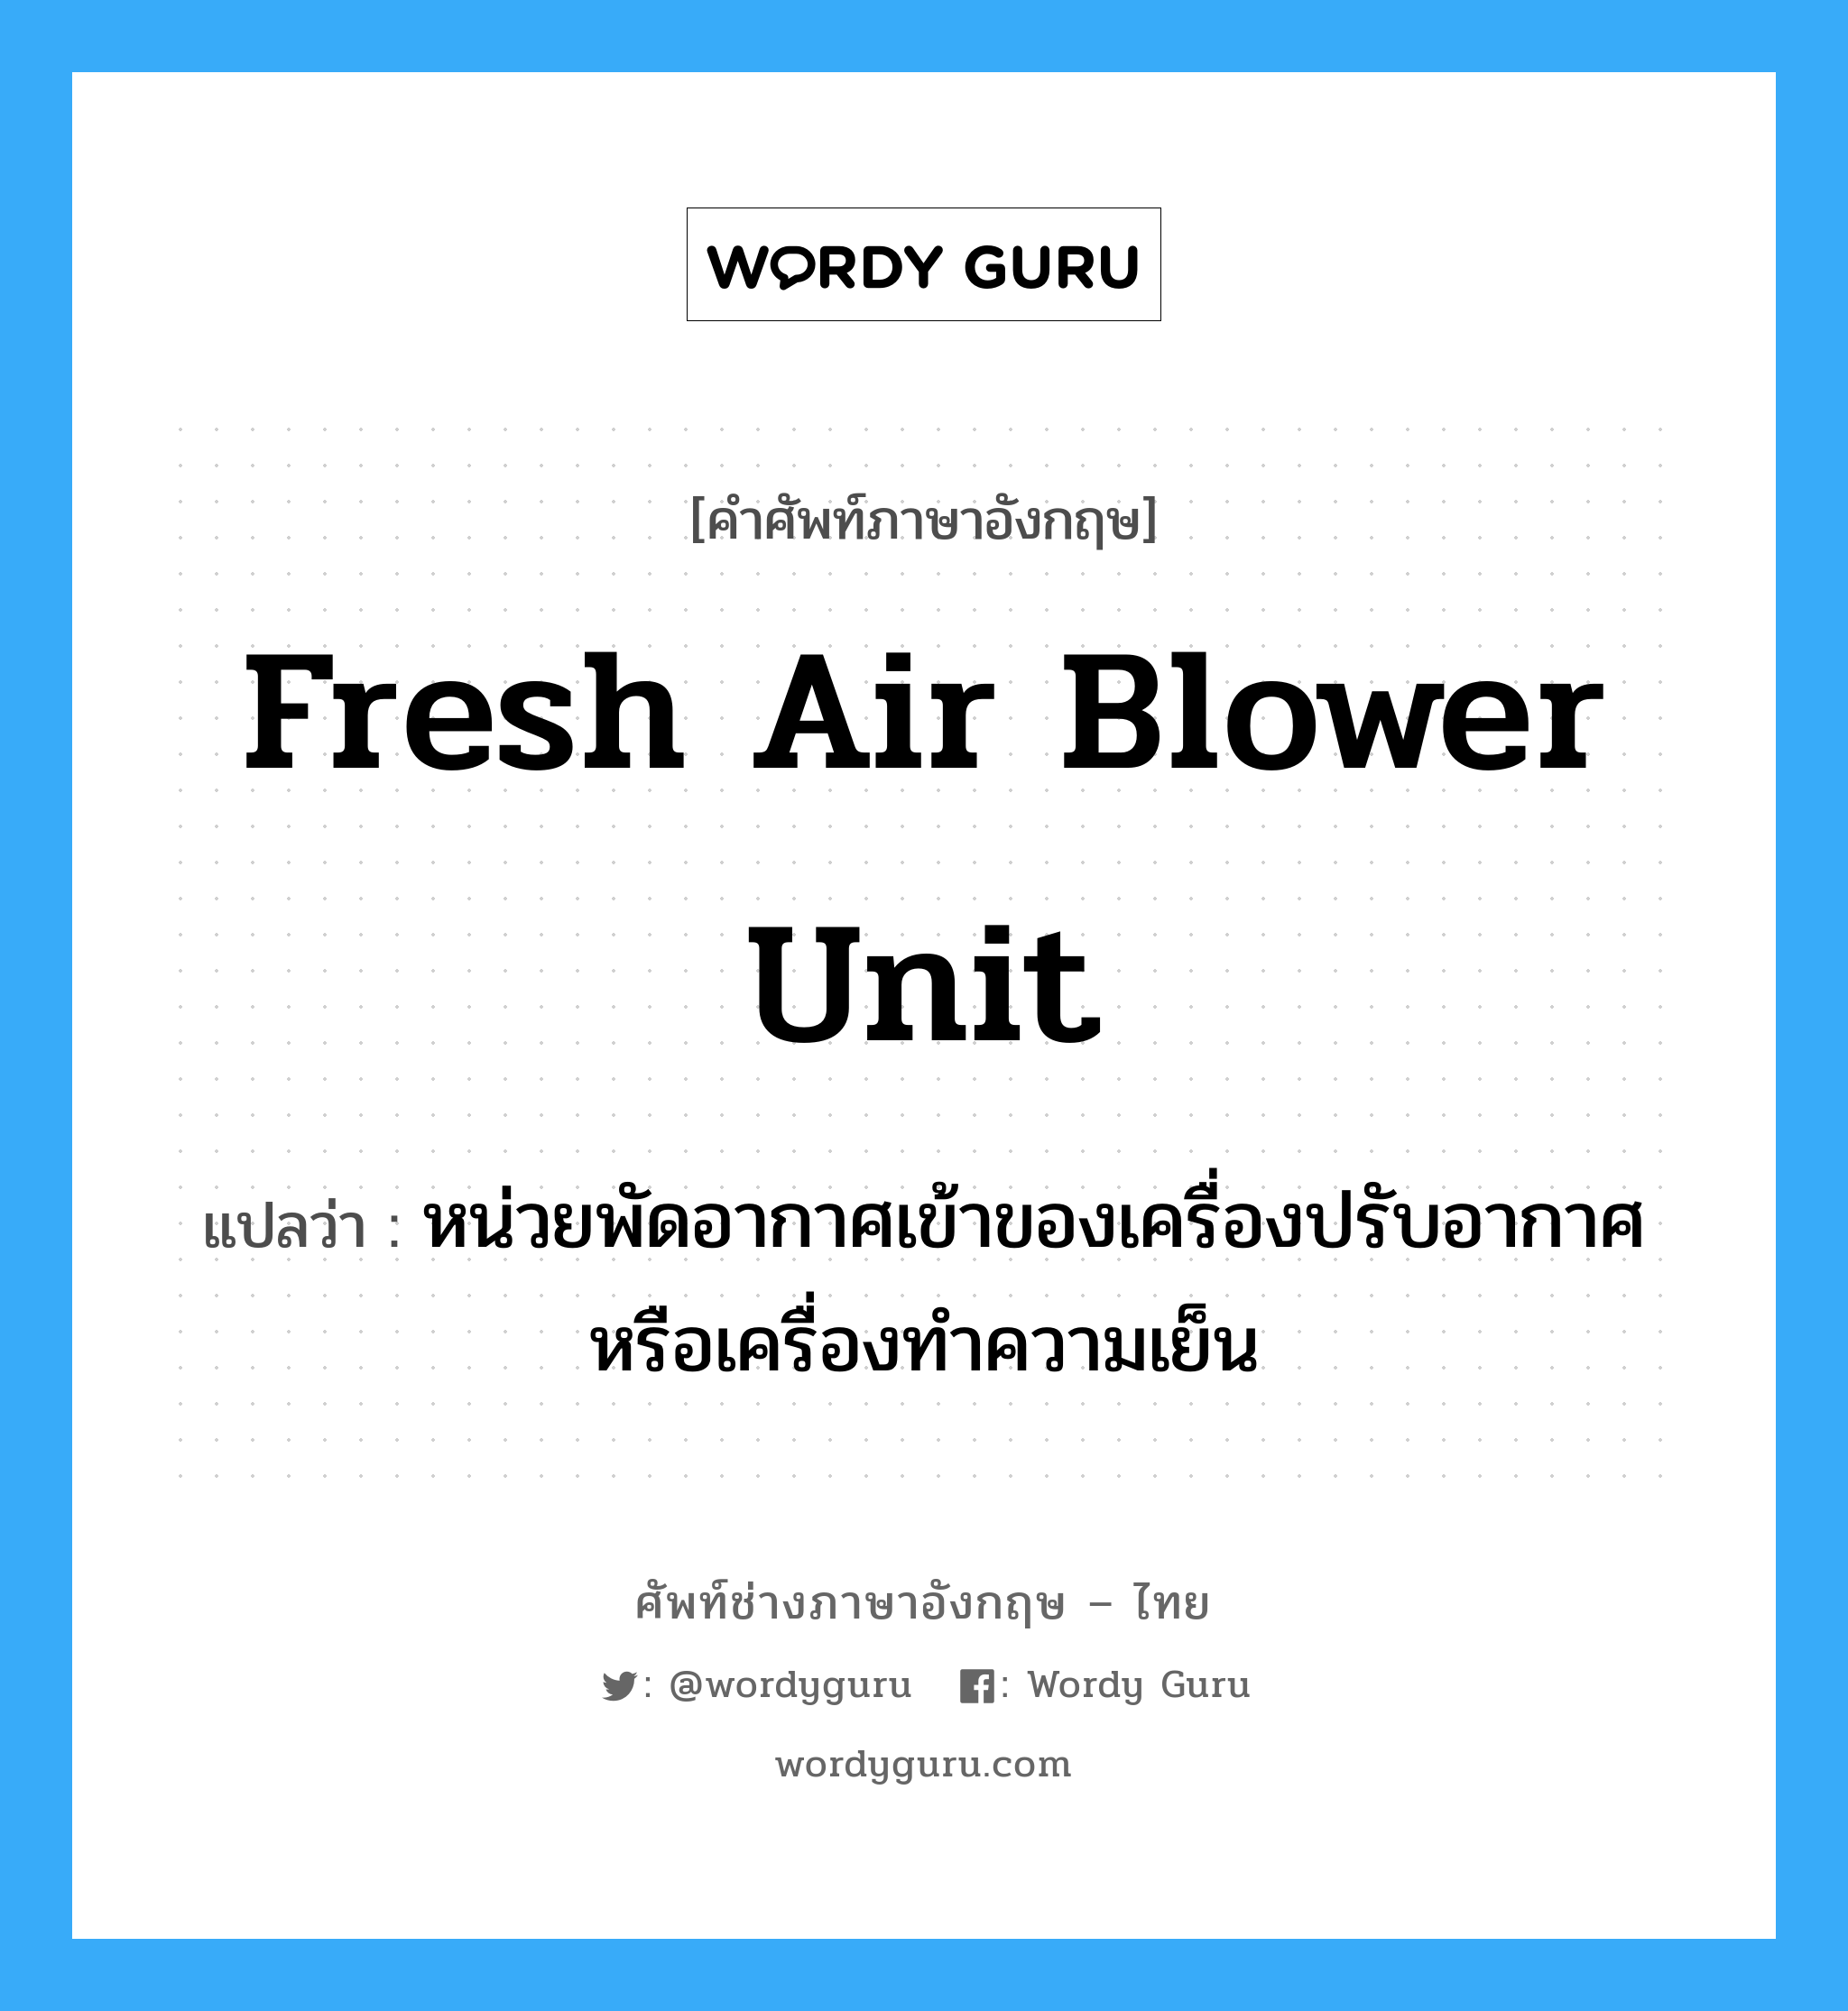 fresh air blower unit แปลว่า?, คำศัพท์ช่างภาษาอังกฤษ - ไทย fresh air blower unit คำศัพท์ภาษาอังกฤษ fresh air blower unit แปลว่า หน่วยพัดอากาศเข้าของเครื่องปรับอากาศ หรือเครื่องทำความเย็น